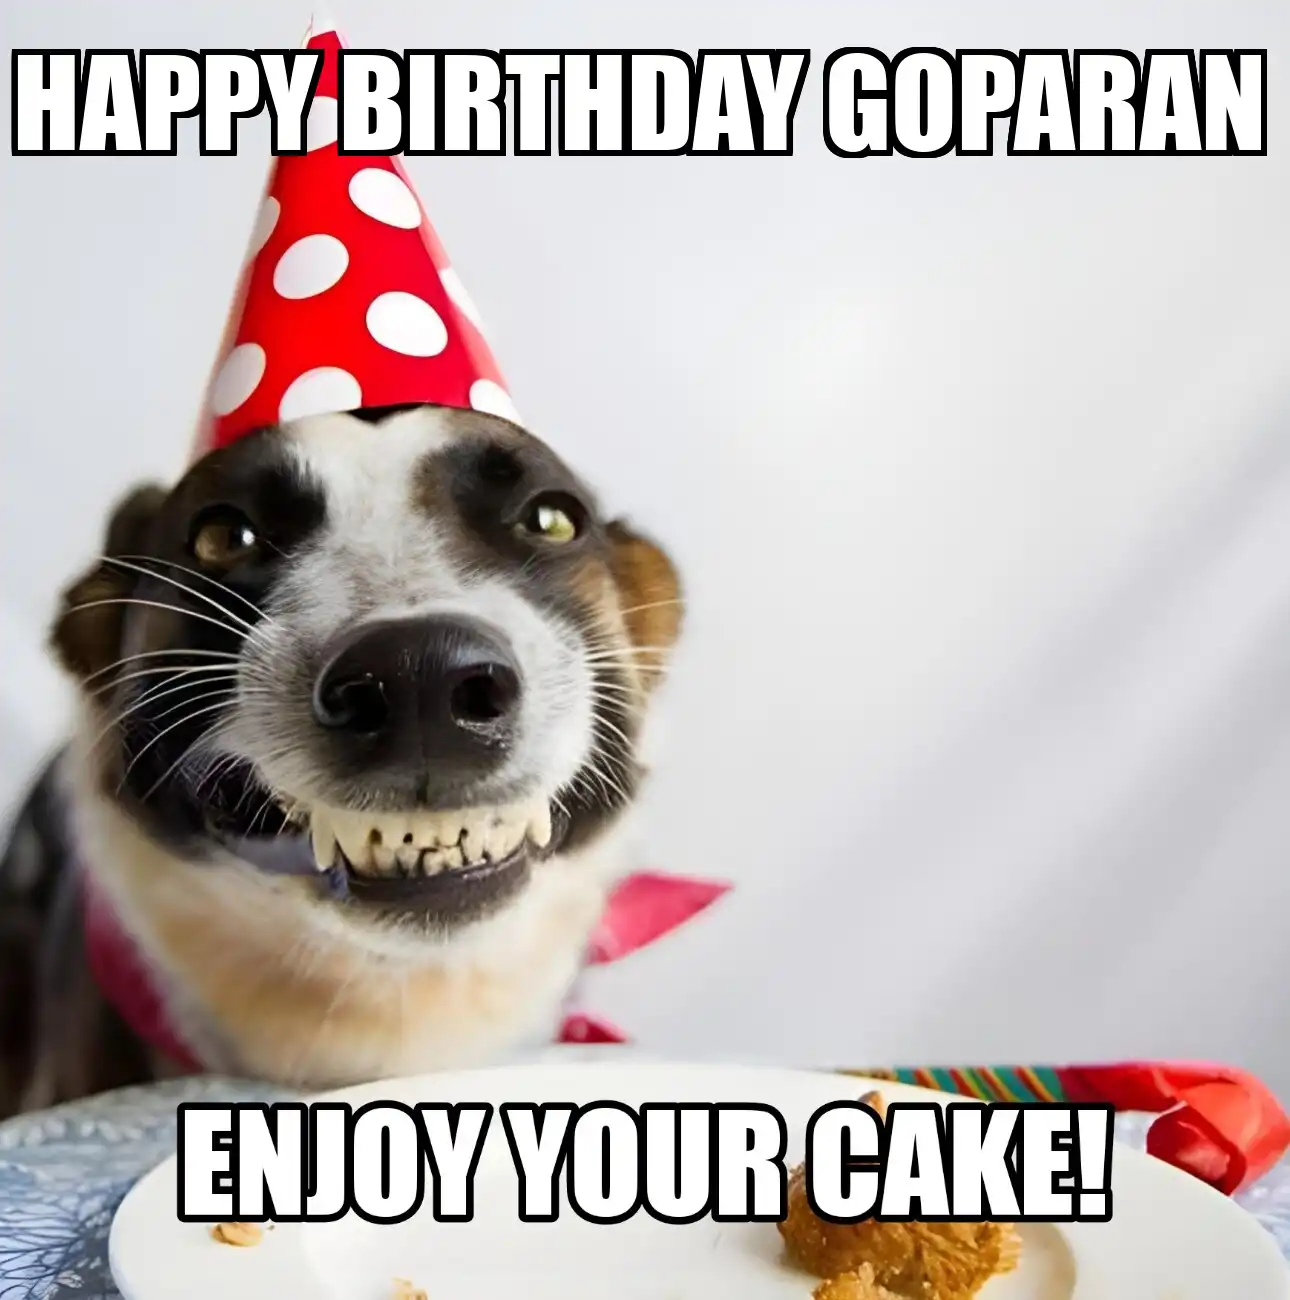 Happy Birthday Goparan Enjoy Your Cake Dog Meme